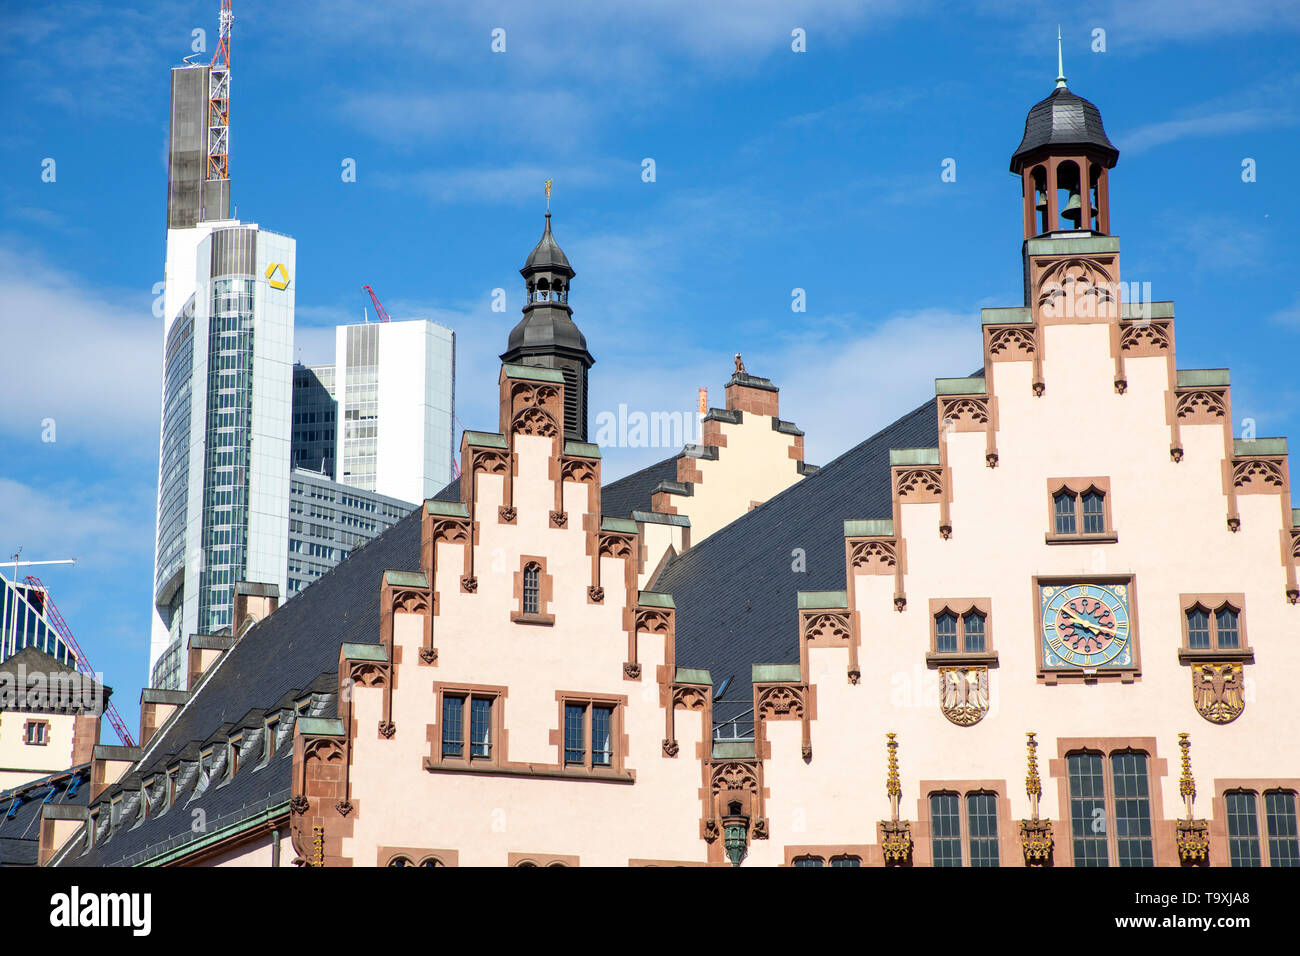 Der Römer, Rathaus von Frankfurt am Main, Wahrzeichen der Stadt, Treppengiebelfassade, hinten, modernes Bankhochaus der Commerzbank, Foto Stock